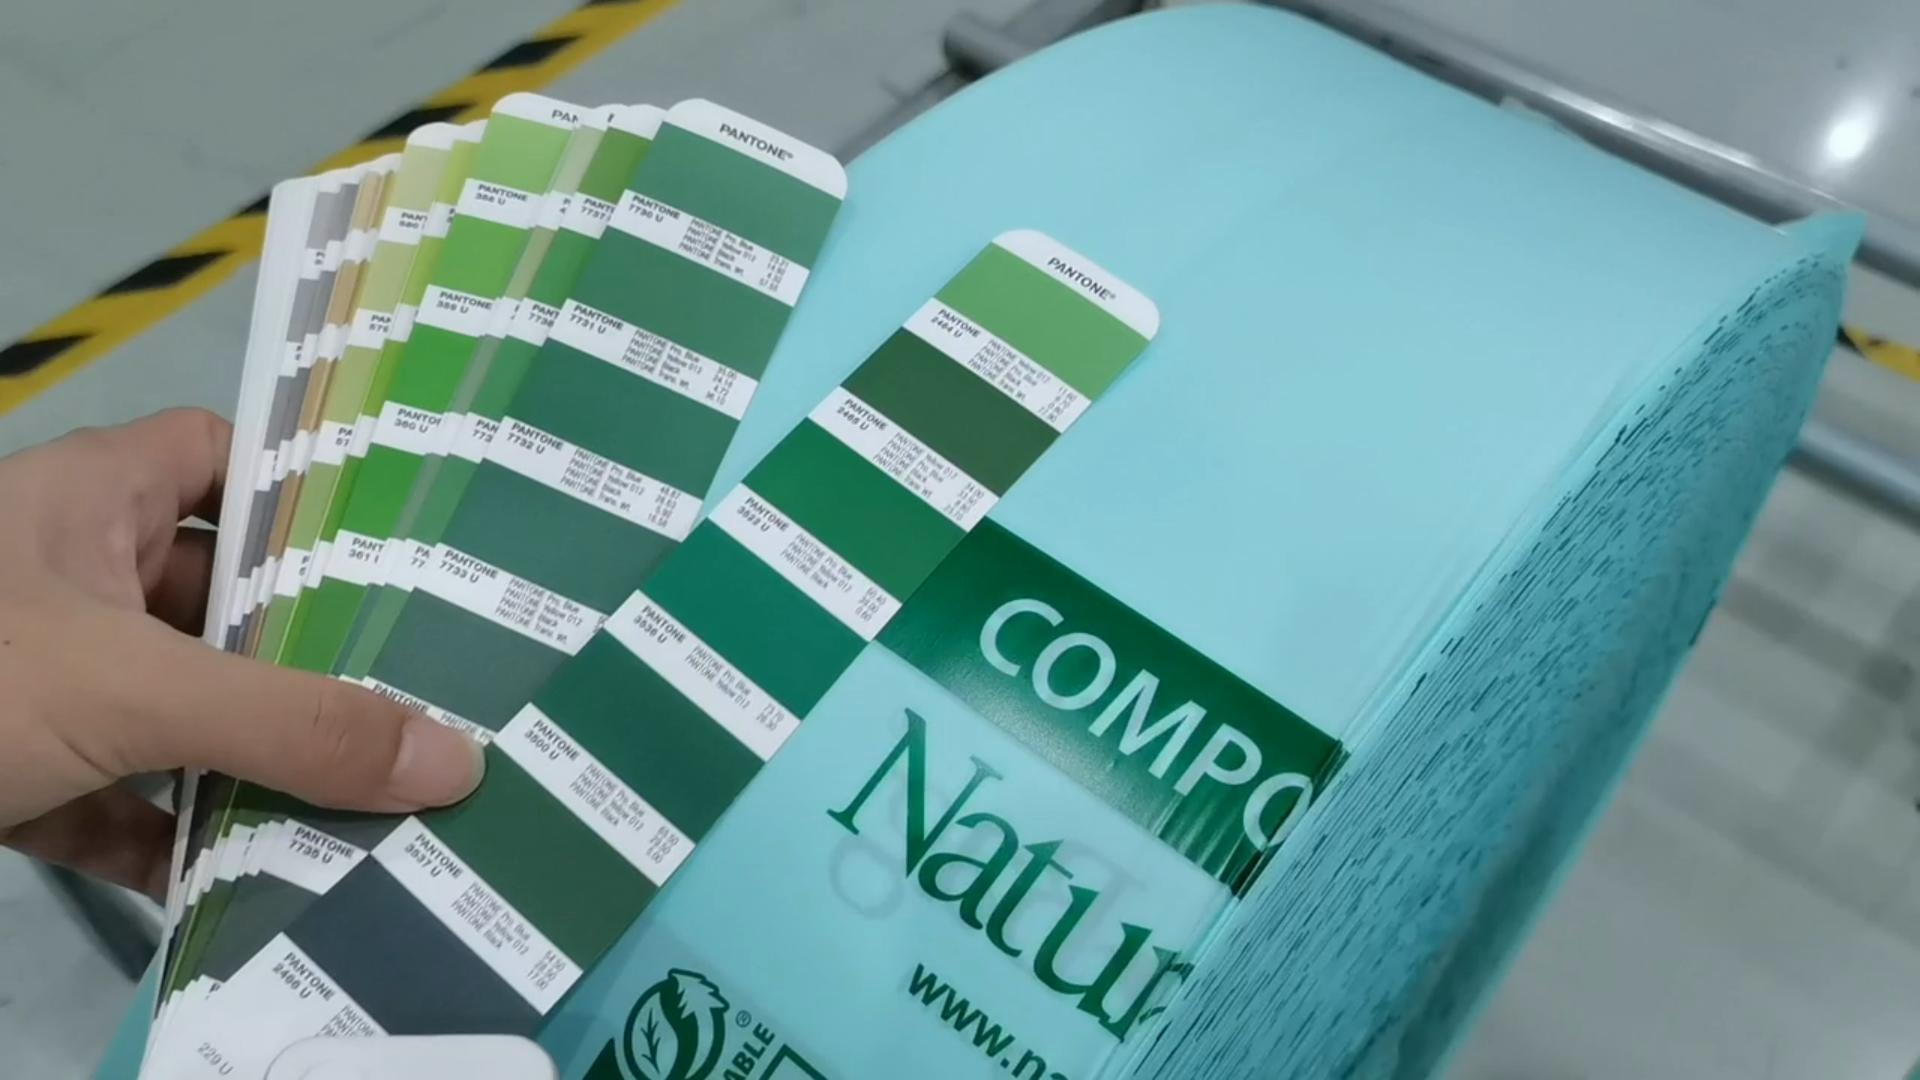 Bolsas de basura de copostibles: contrastes color impreso